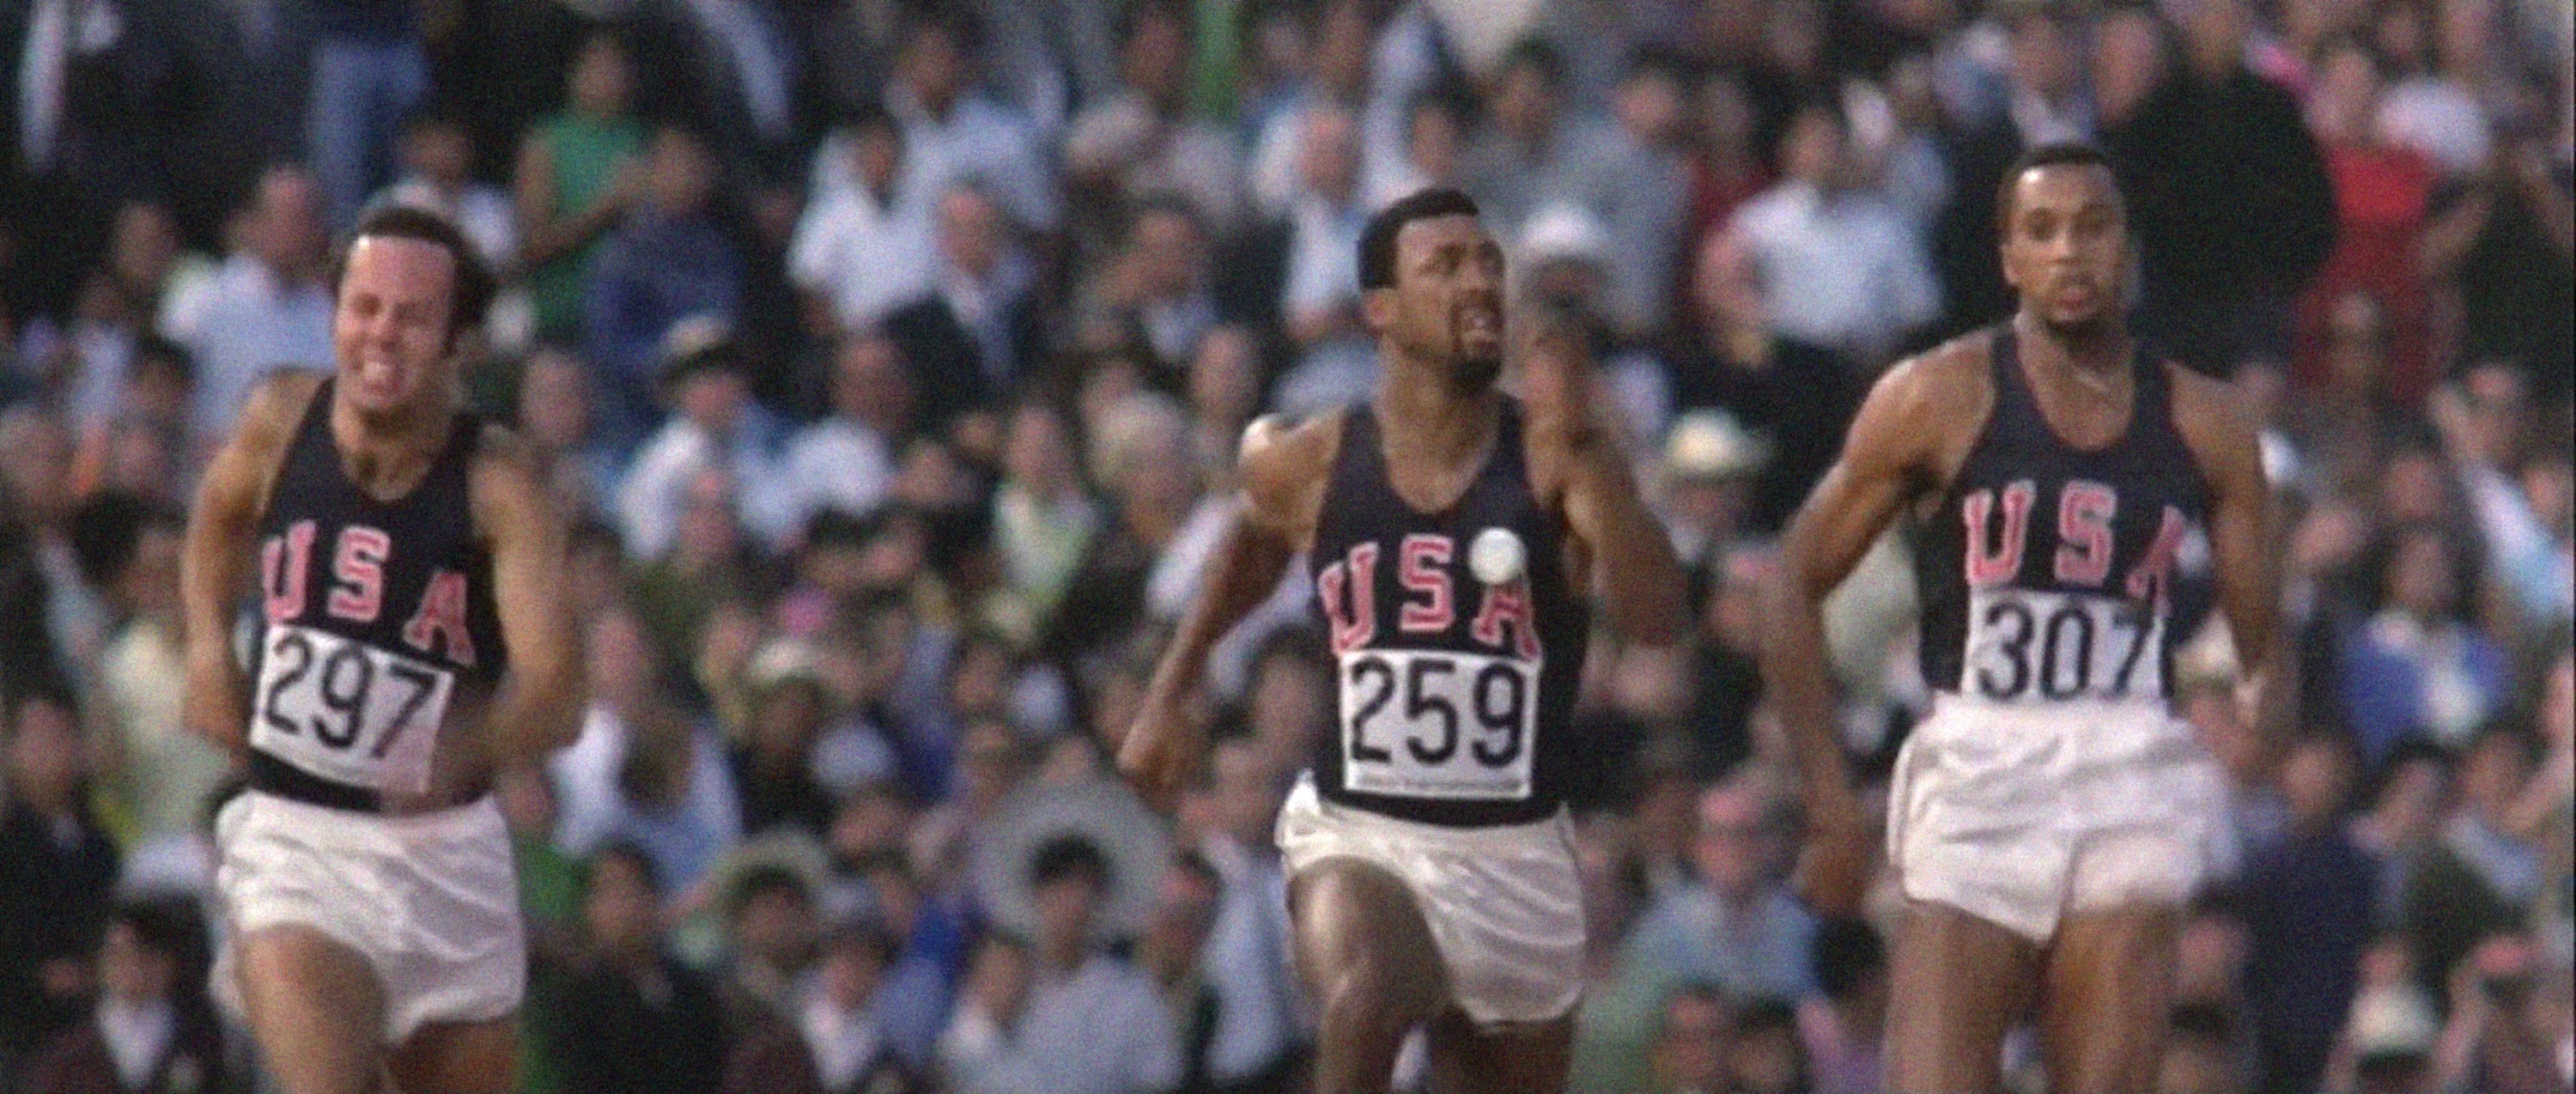 Un particolare della finale dei 200 metri piani, da sinistra: Larry Quested, John Carlos, Tommie Smith. I due atleti afroamericani passeranno alla storia per il loro gesto di protresta durante la premiazione della gara